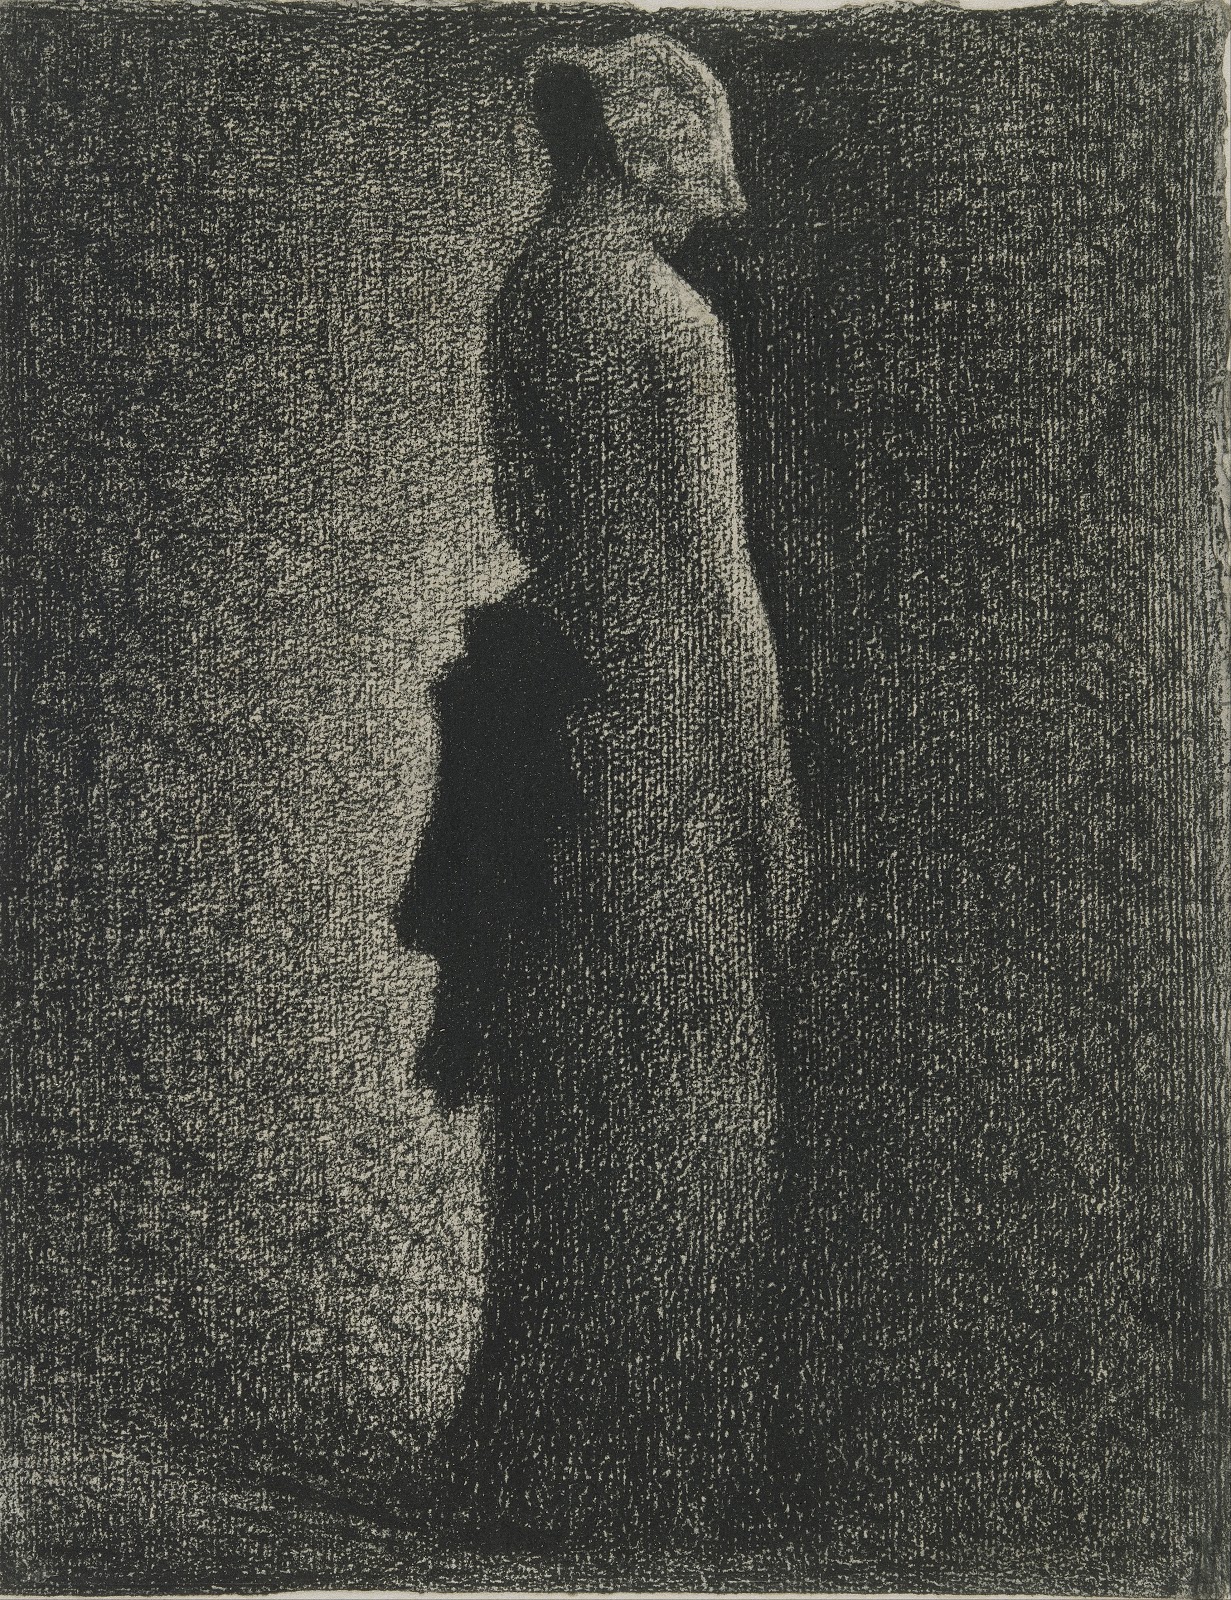 Georges+Seurat-1859-1891 (54).jpg